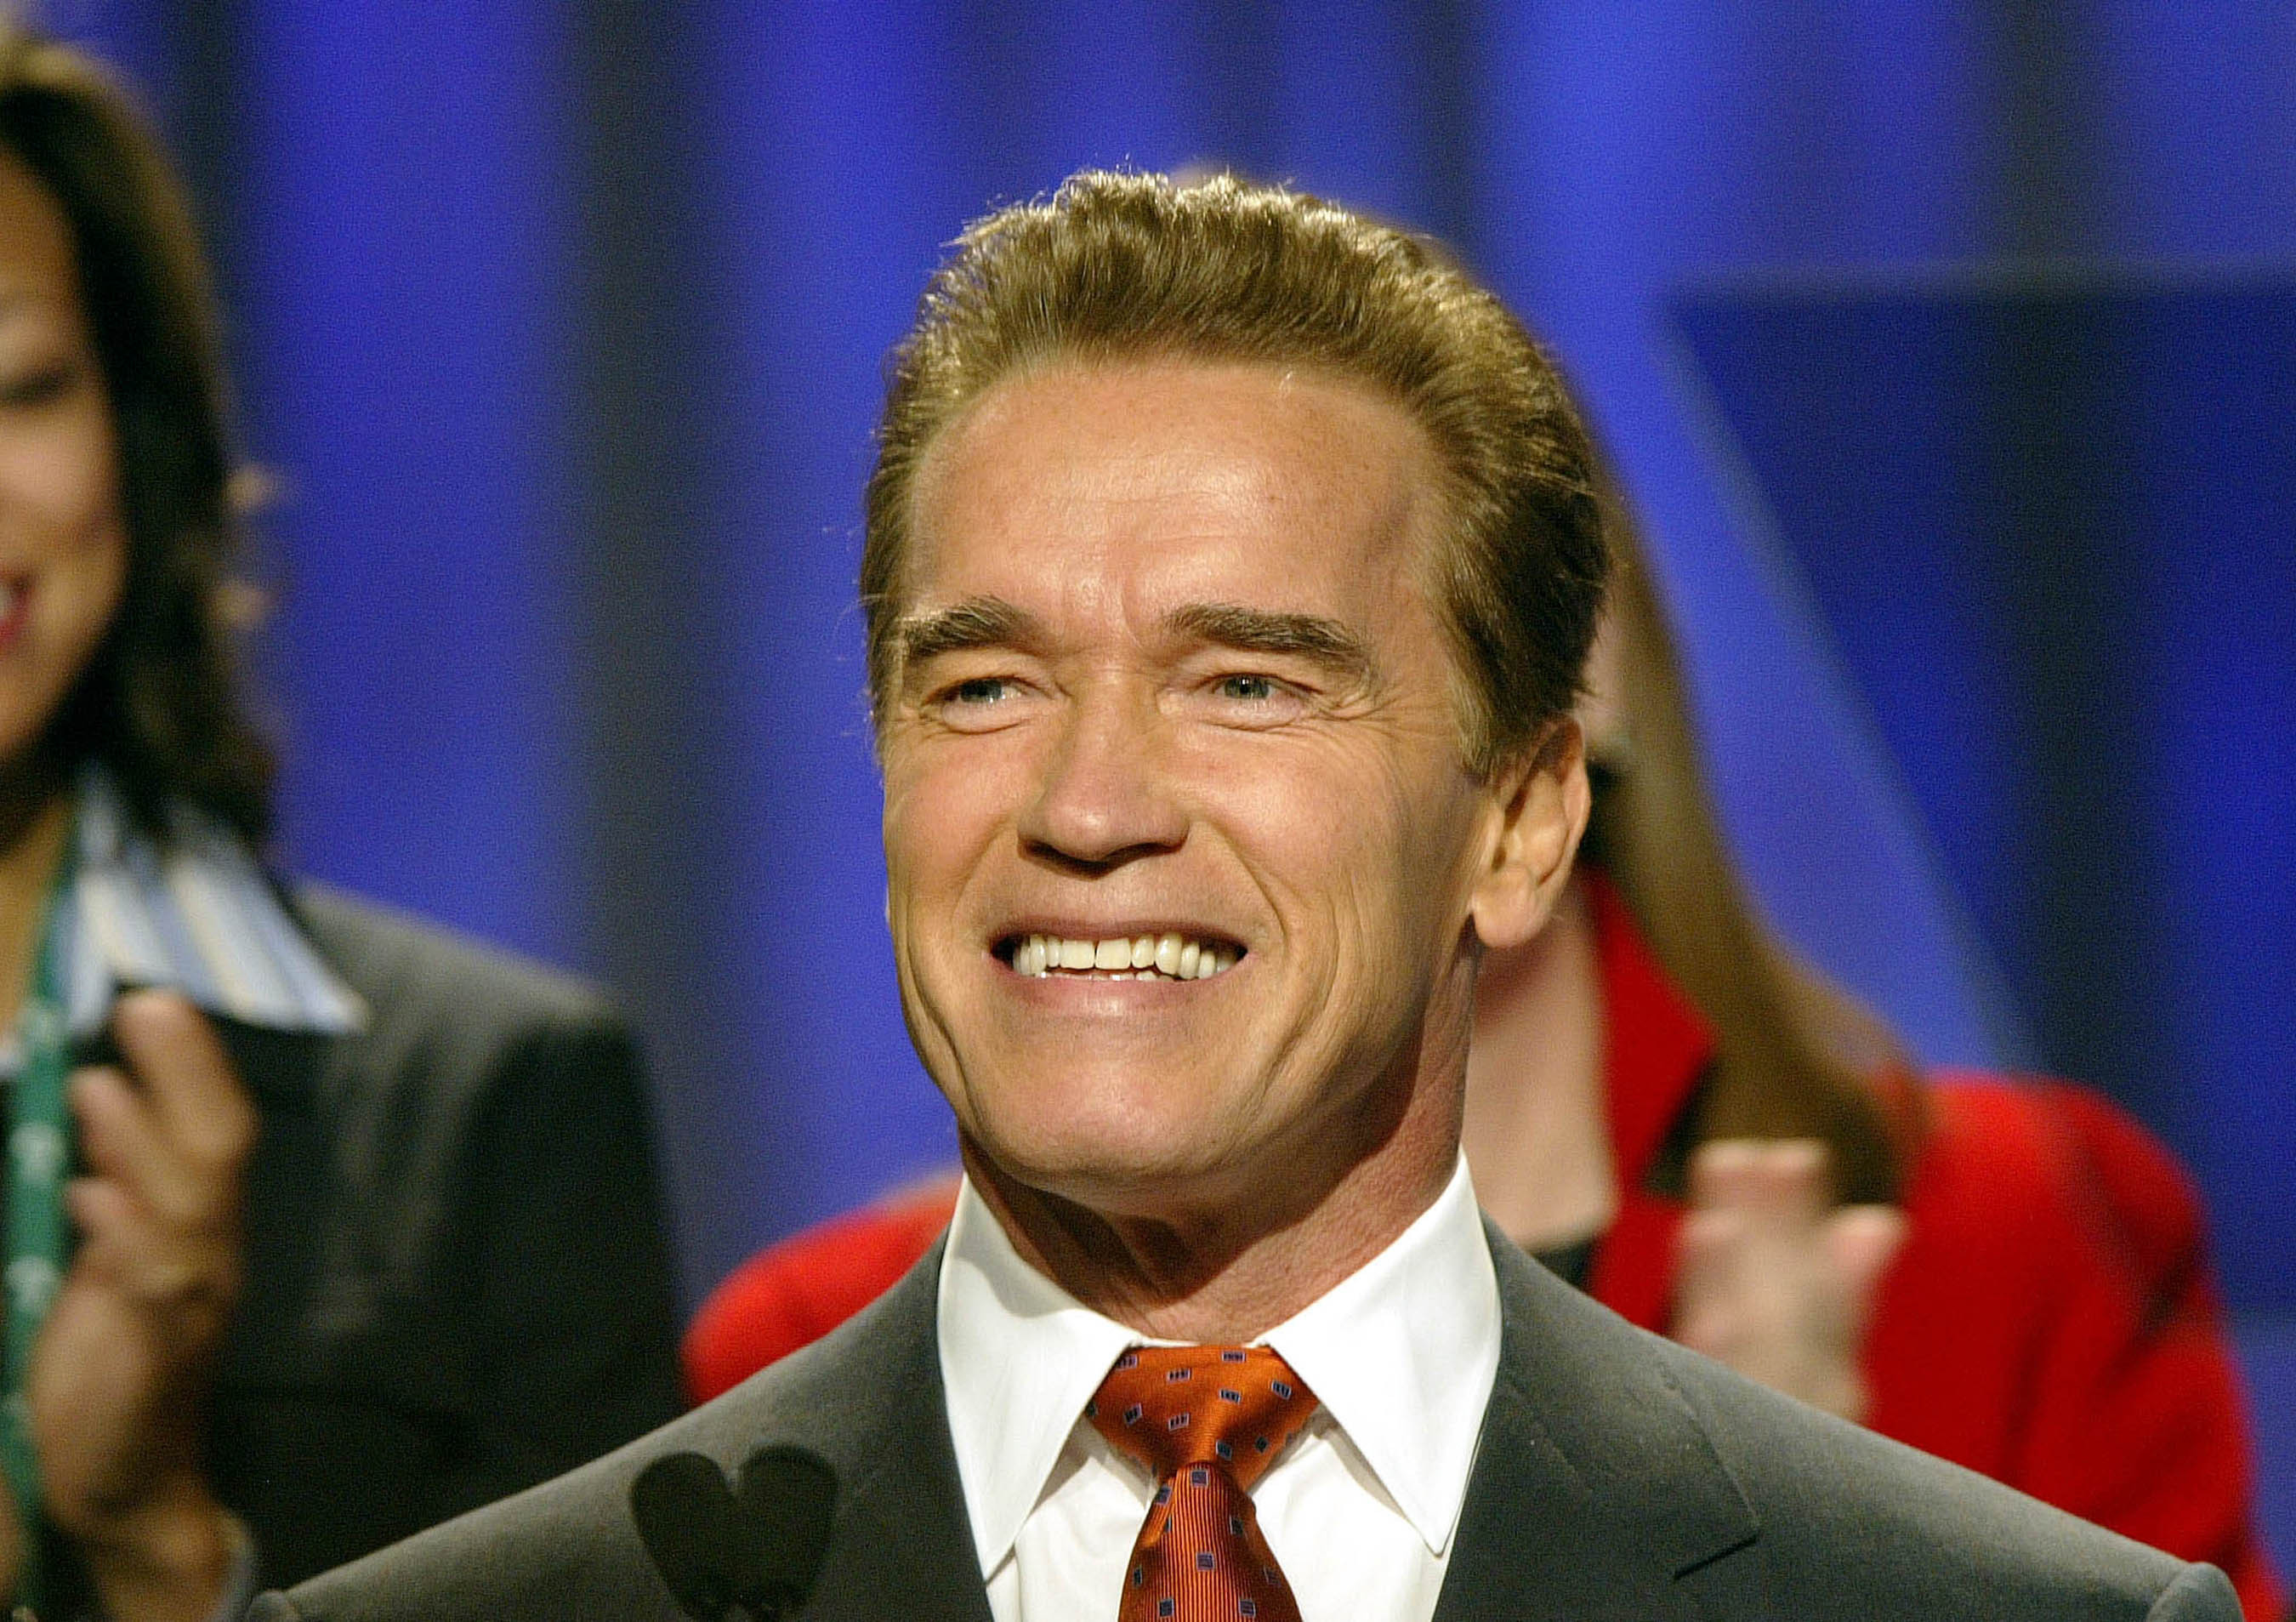 Arnold Schwarzenegger at the California Governor Conference Long Beach California 2004